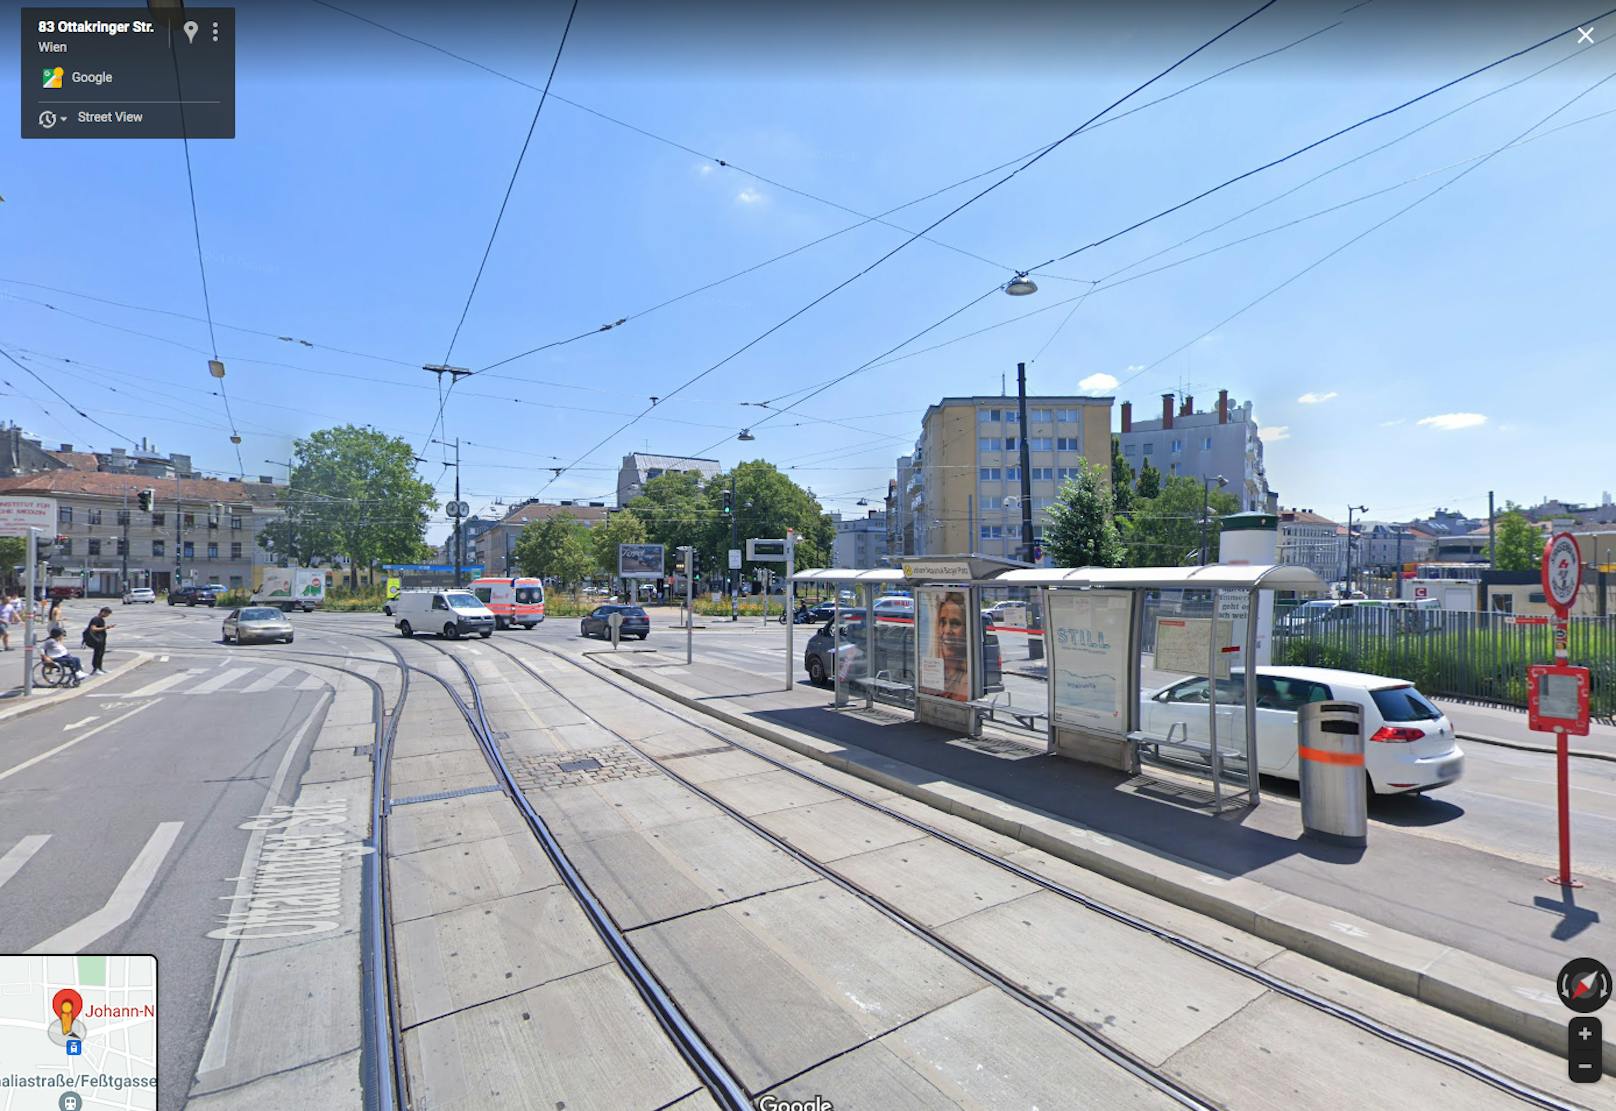 Wenn es in der Ottakringer Straße staut, landen Autos oft auf den Gleisen der Linie 44 und blockieren die Bim. Daher baten die Wiener LInien den Bezirk um Umwandlung einer Parkspur in eine Fahrspur.